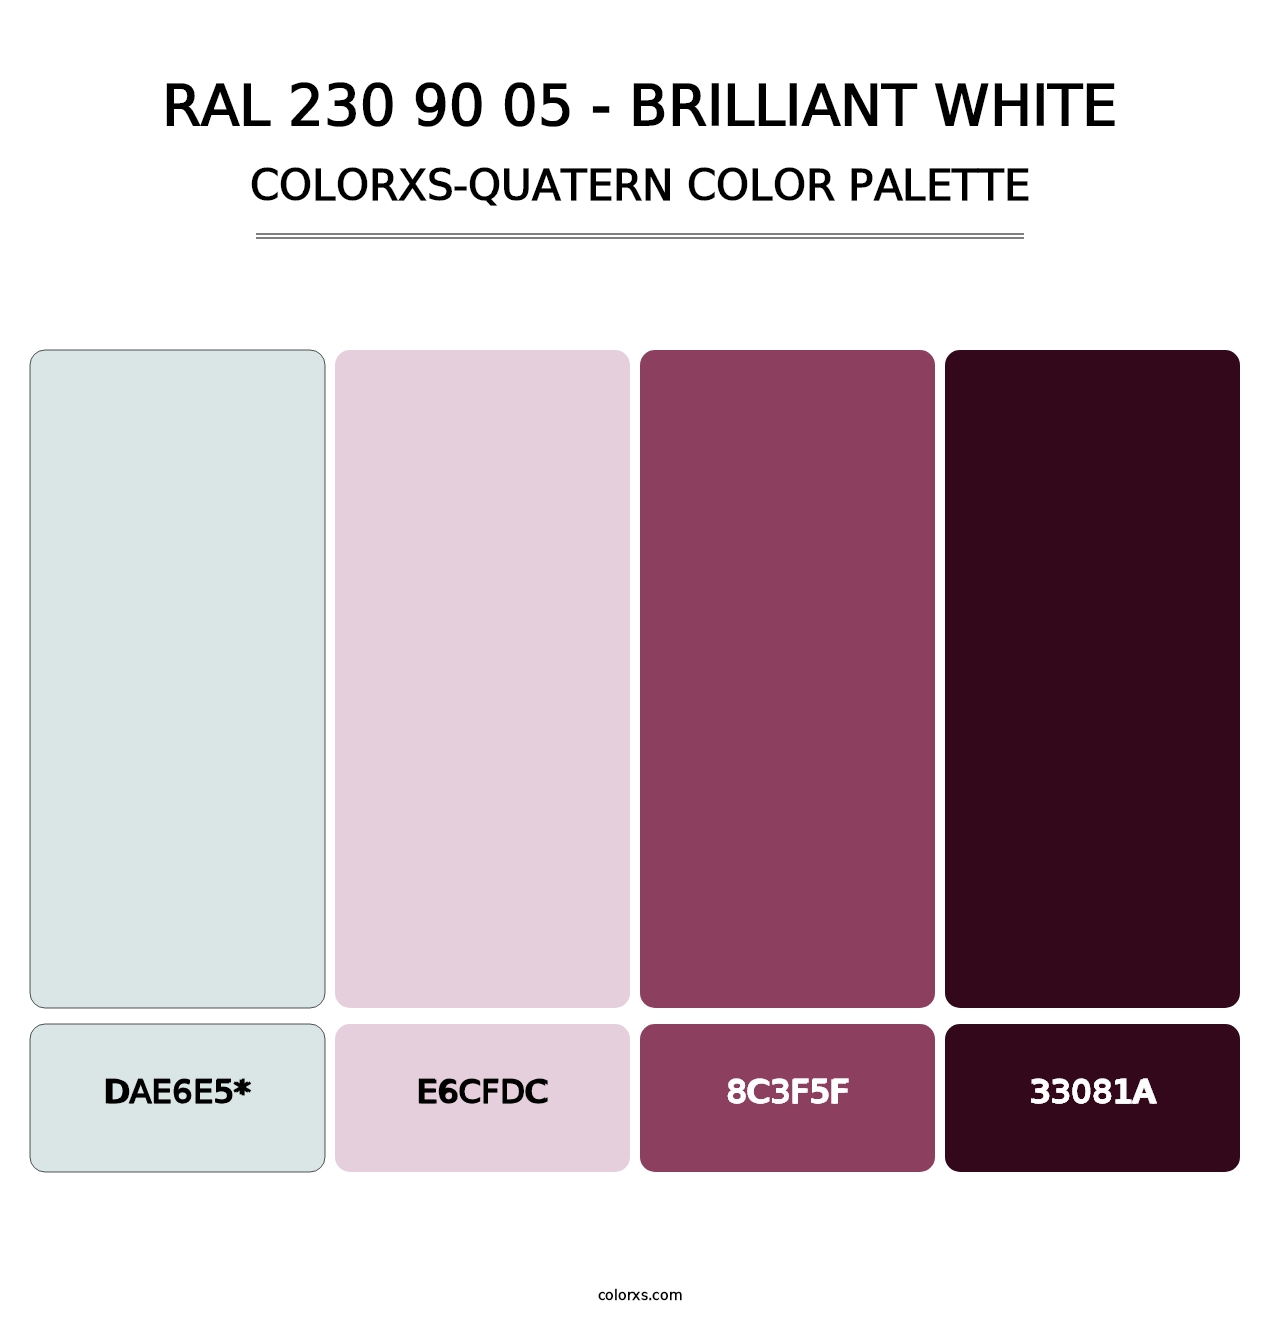 RAL 230 90 05 - Brilliant White - Colorxs Quatern Palette